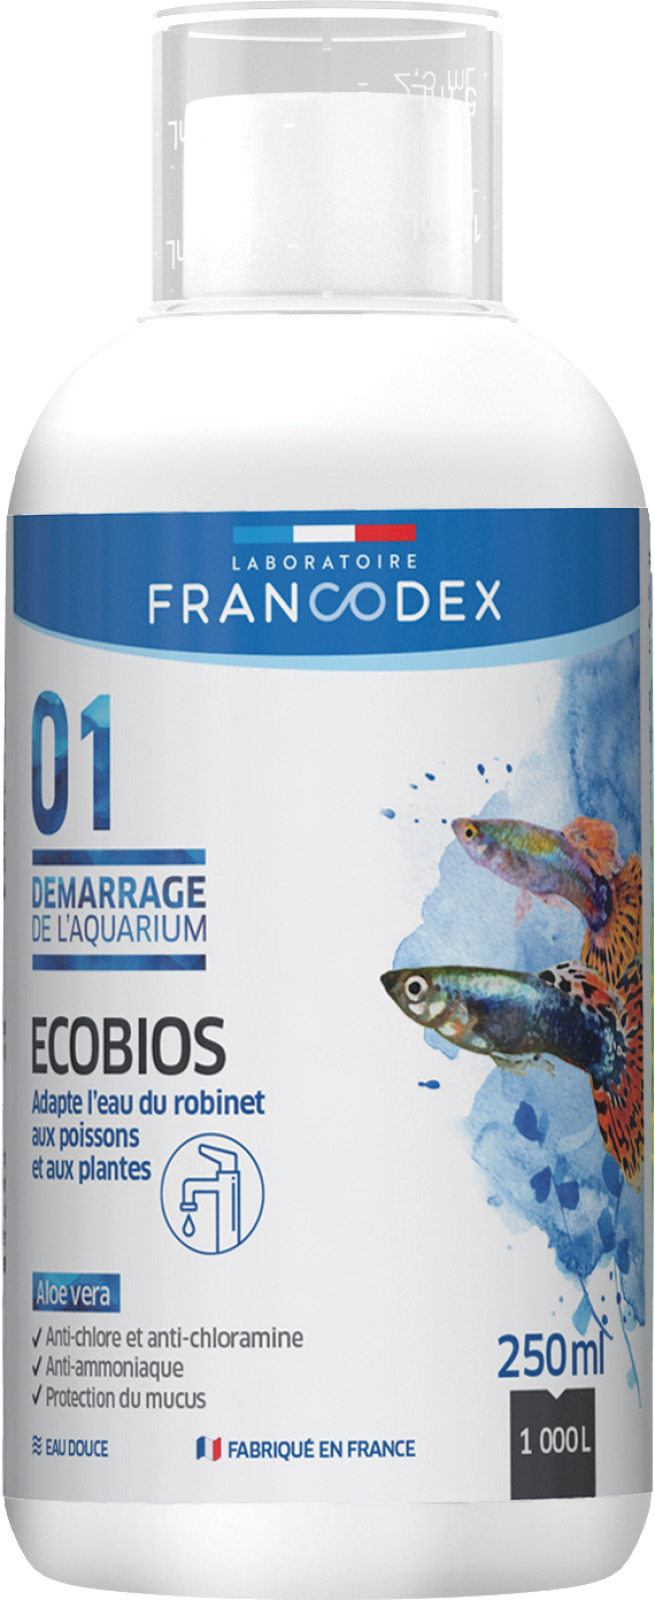 Ecobios waterverbeteraar FRANCODEX